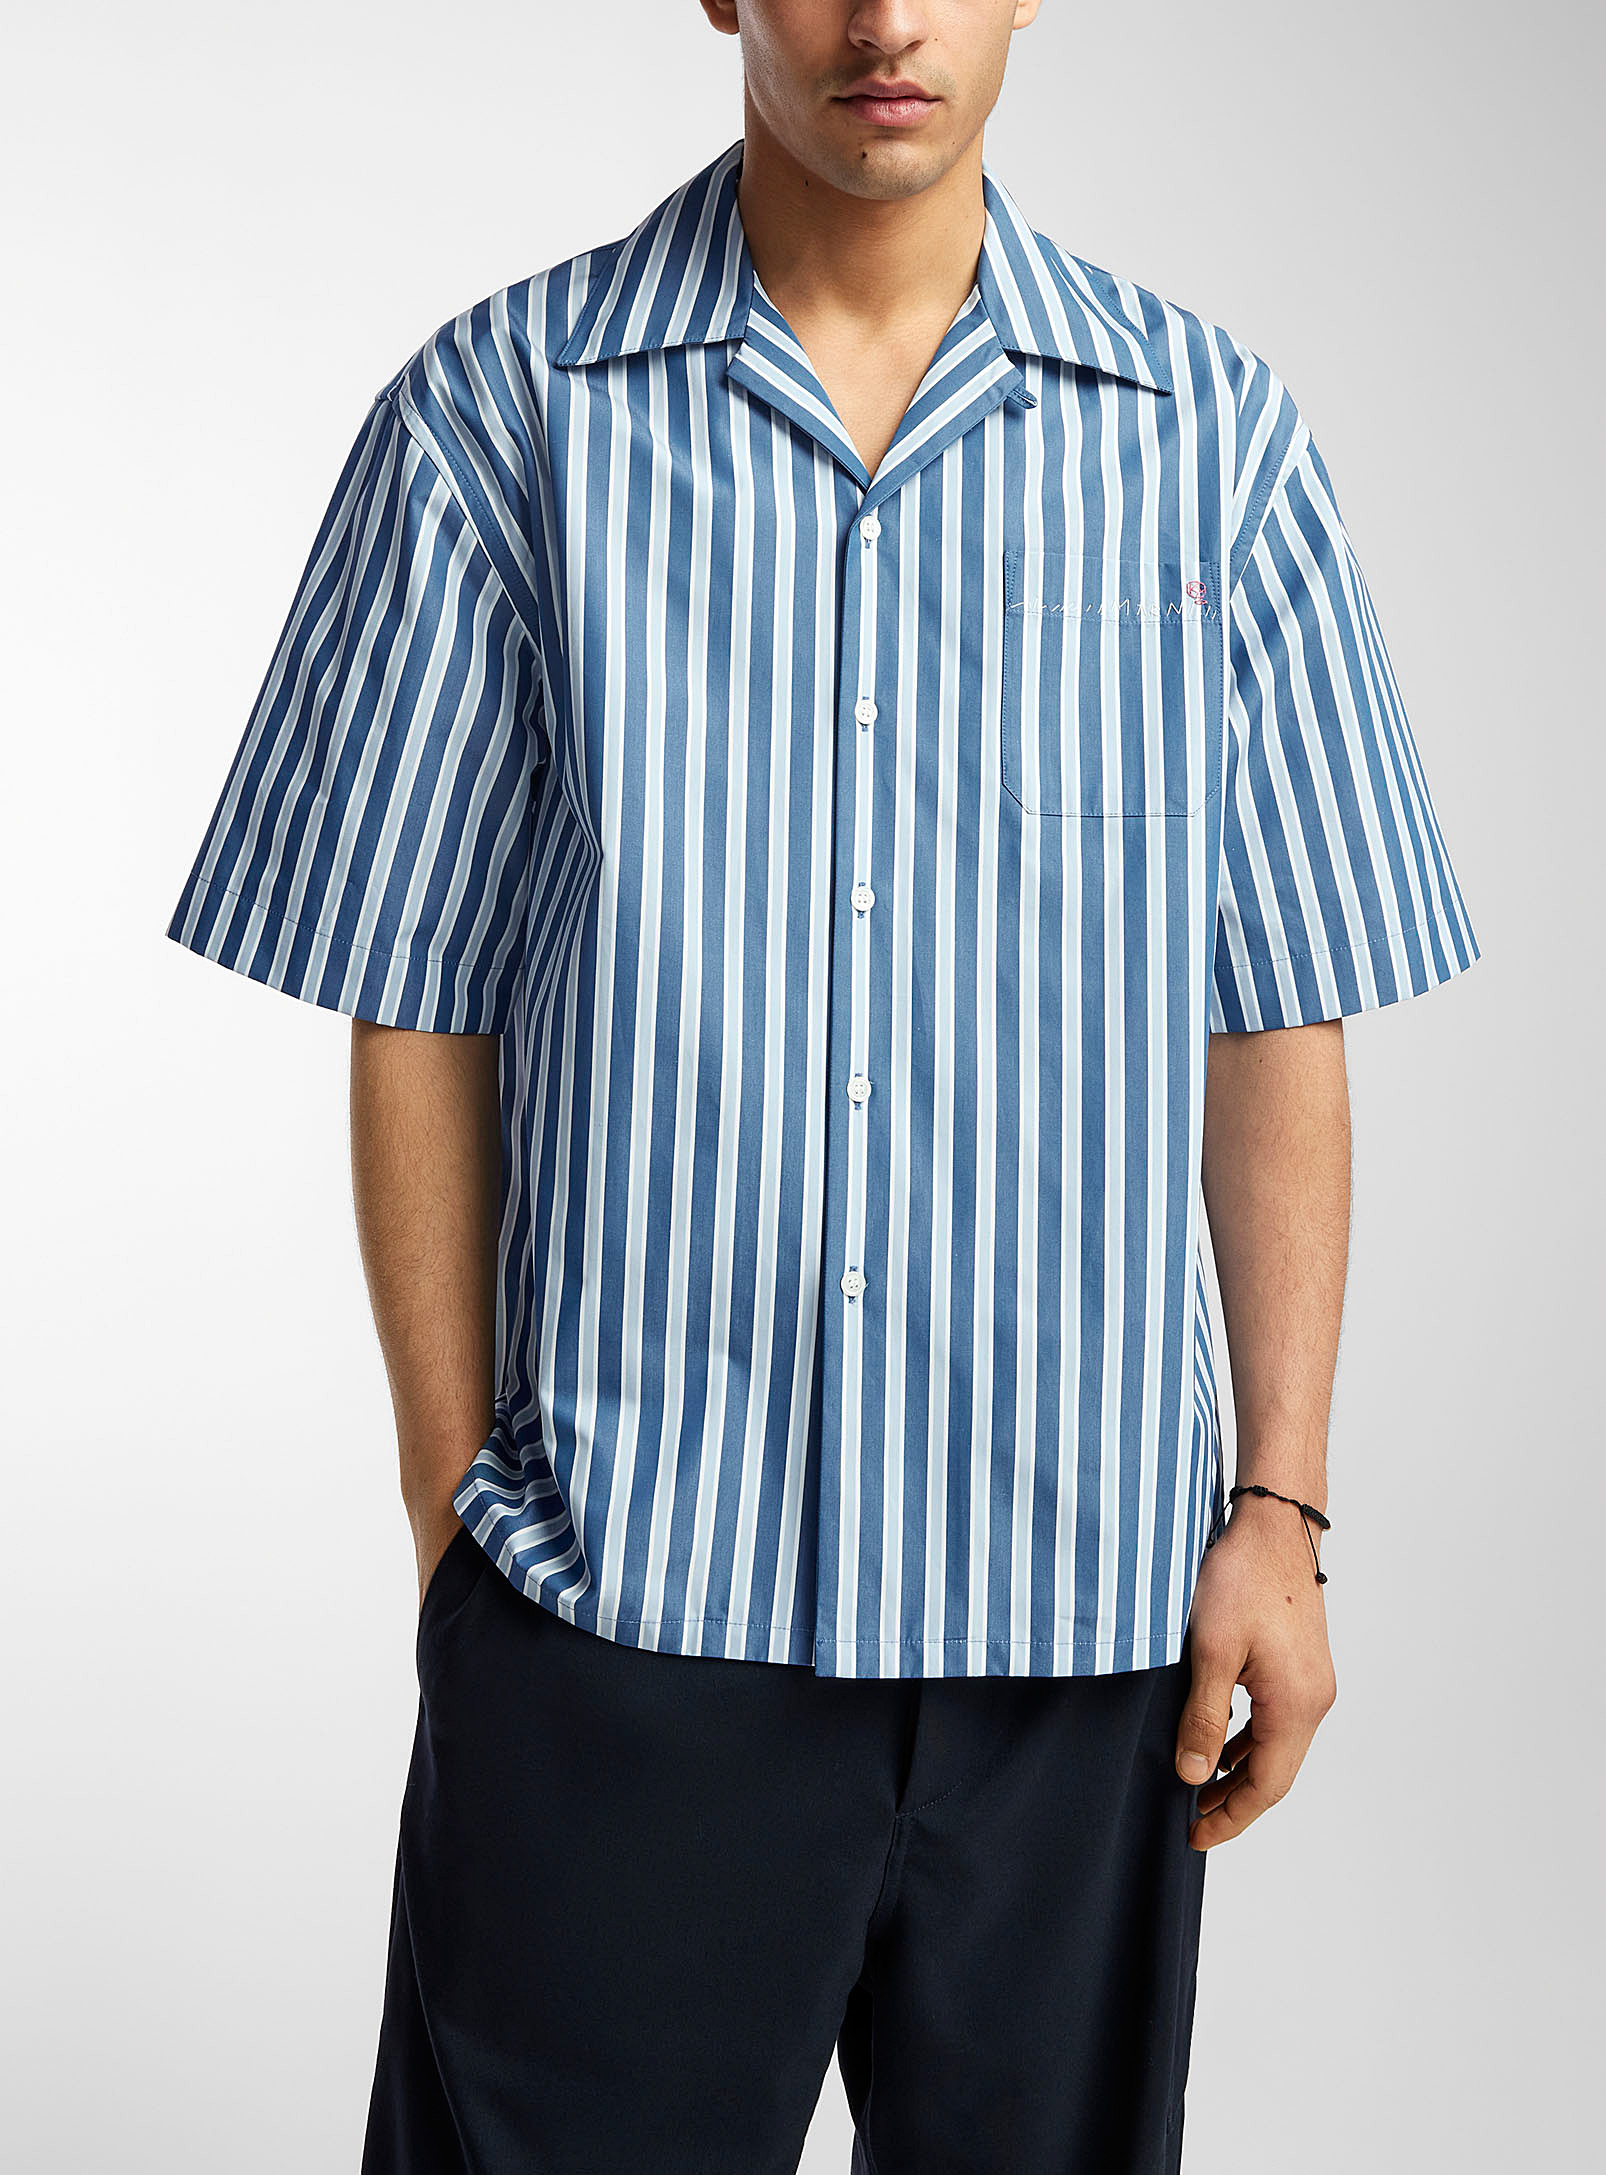 MARNI - La chemise rayée popeline compacte